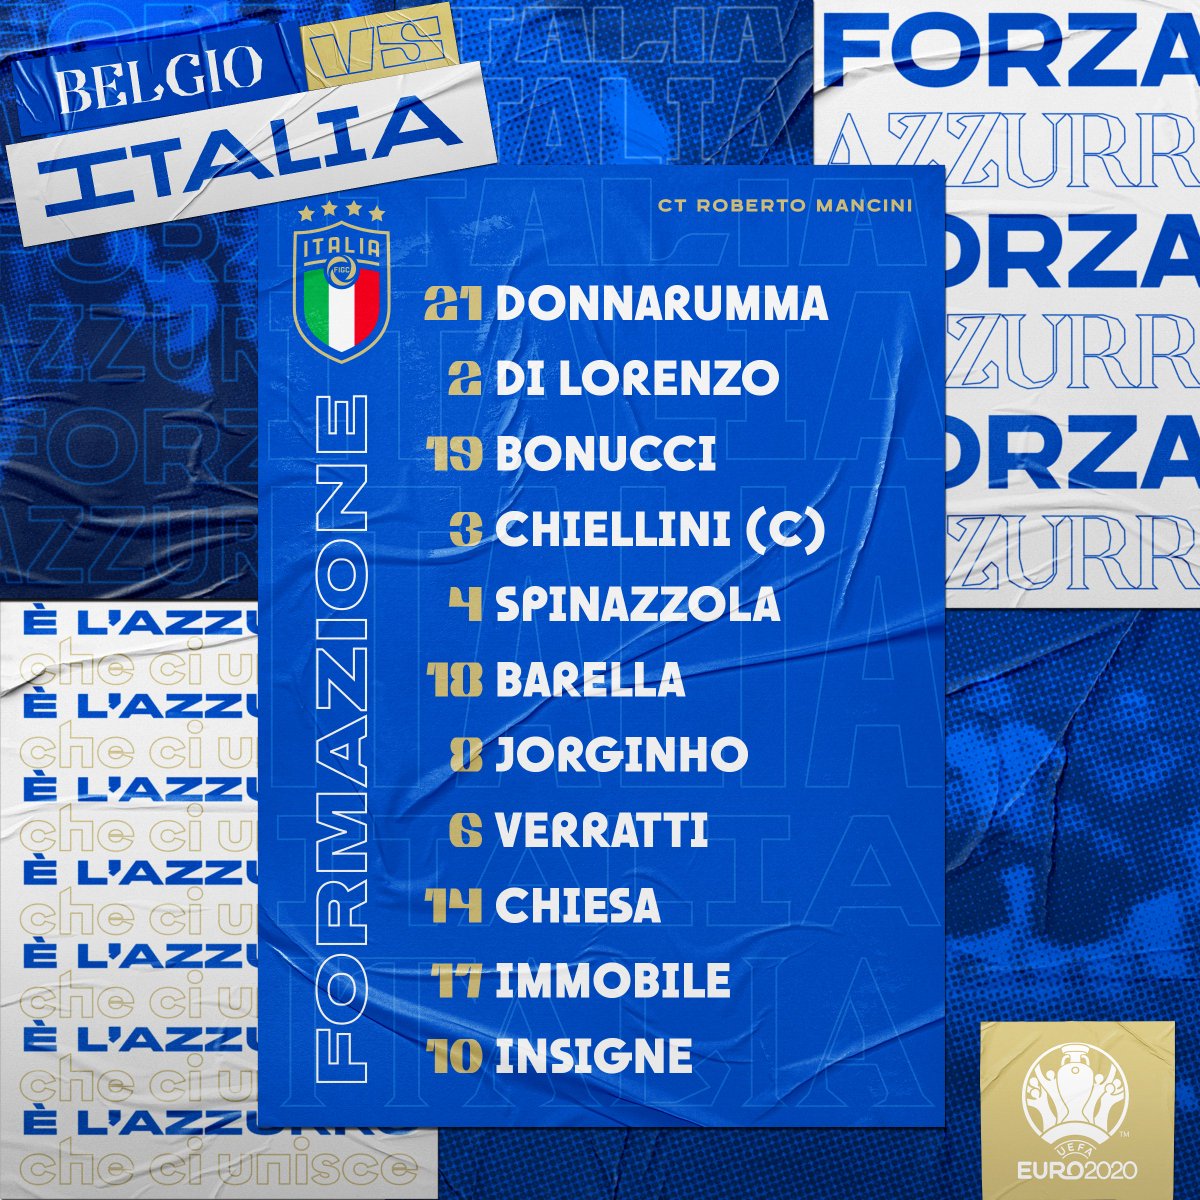 Gli 1⃣1⃣ #Azzurri scelti dal Ct #Mancini!

🇧🇪 #BelgioItalia 🇮🇹 
⏱️ 21.00
🏟️ #FußballArena - #MonacoDiBaviera
⚽️ Quarti di finale 
📺 #Rai1 #SkySport

#ITA #EURO2020 #BELITA
#Nazionale #VivoAzzurro